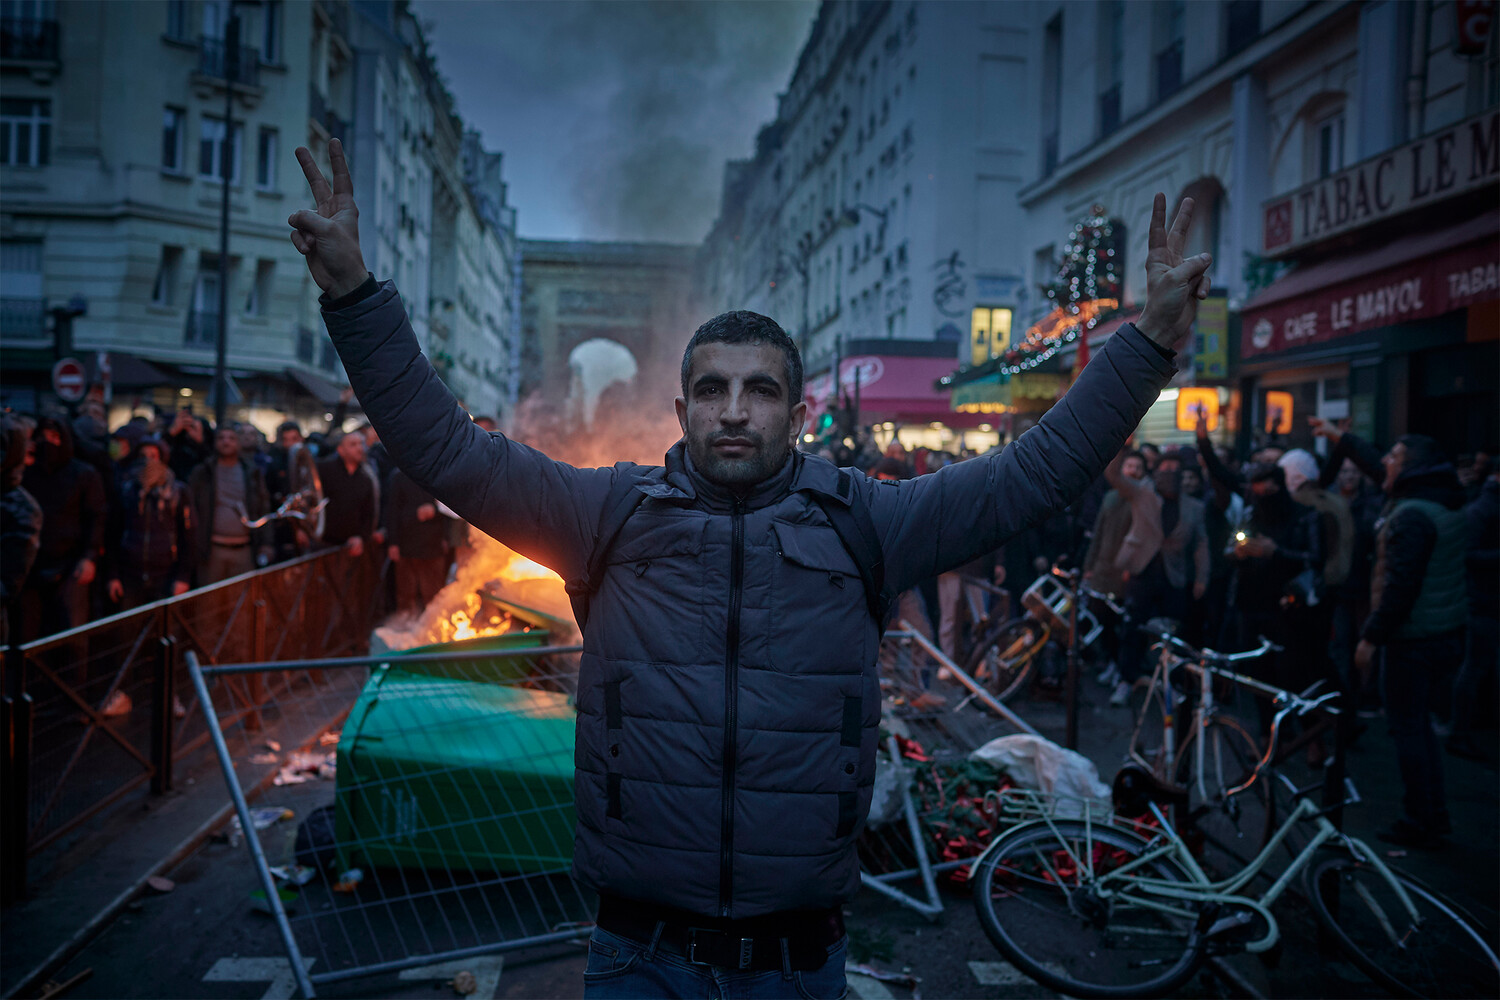 Француз открыто. Мигранты во Франции. Украина люди. Фото Парижа сейчас с мигрантами.